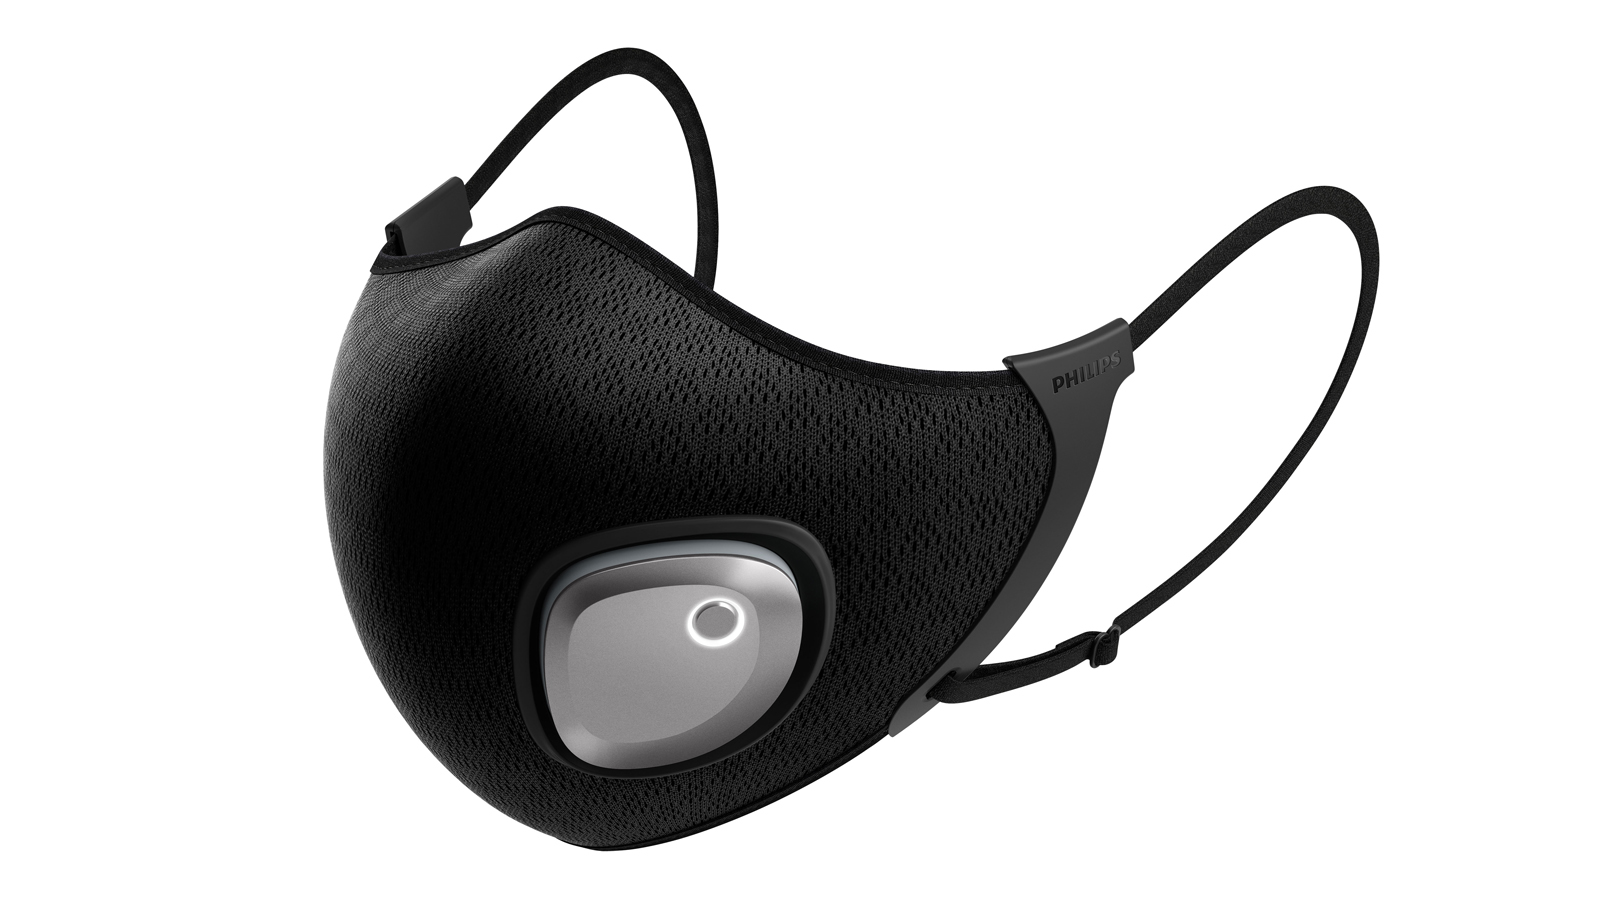 Sambut era baru perangkat wearable penyaring udara pribadi dengan Philips Fresh Air Mask